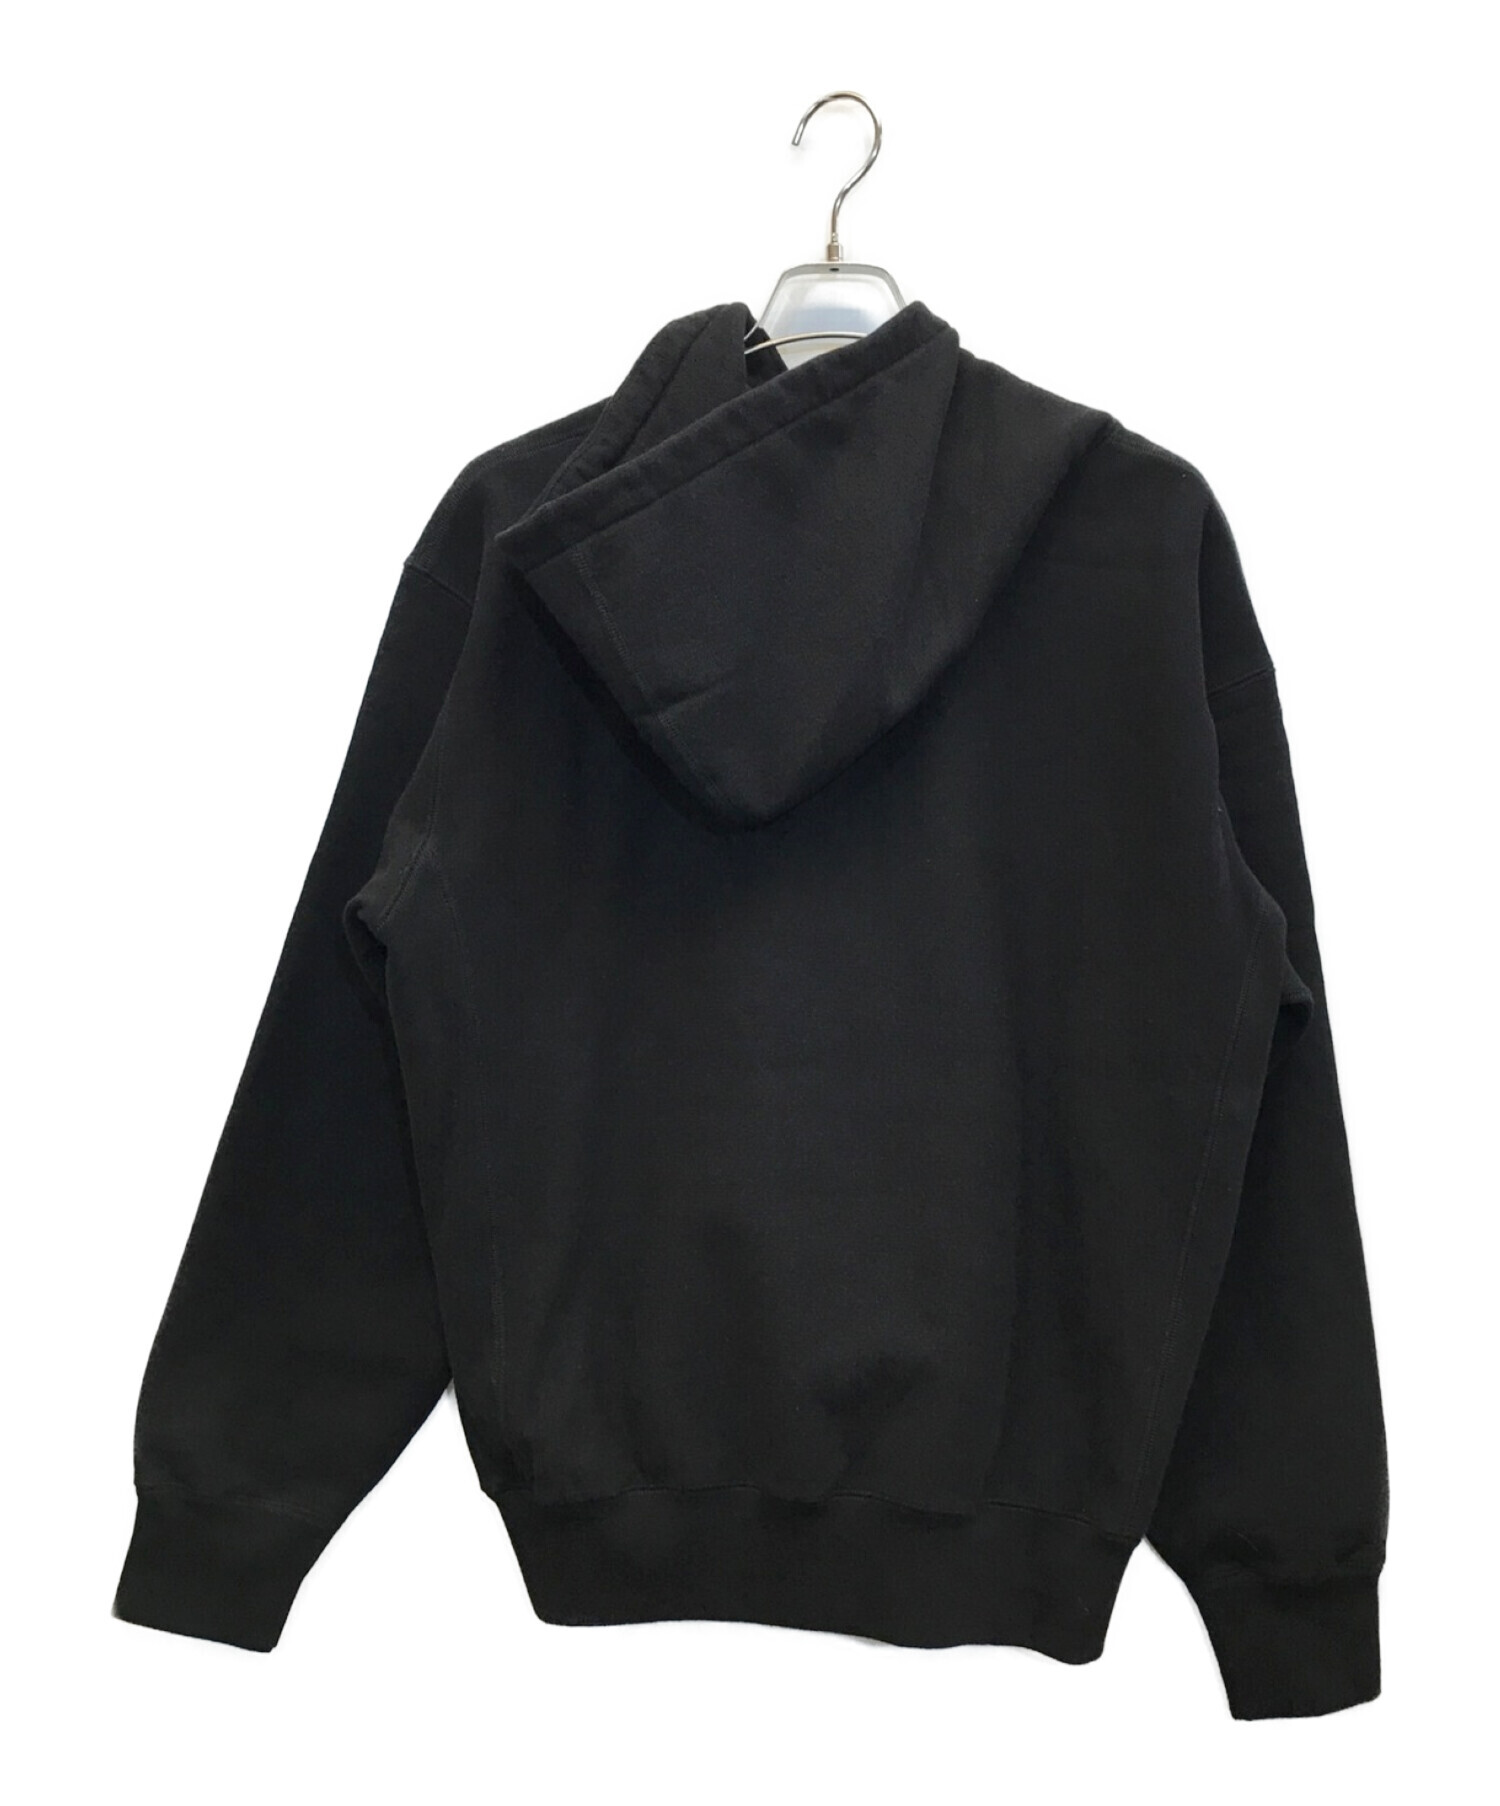 Supreme×JUNYA WATANABE COMME des GARCONS MAN 21AW Hooded Sweatshirt  フーデッドスウェットシャツ　コラボ ロゴパーカー ブラック サイズ:M